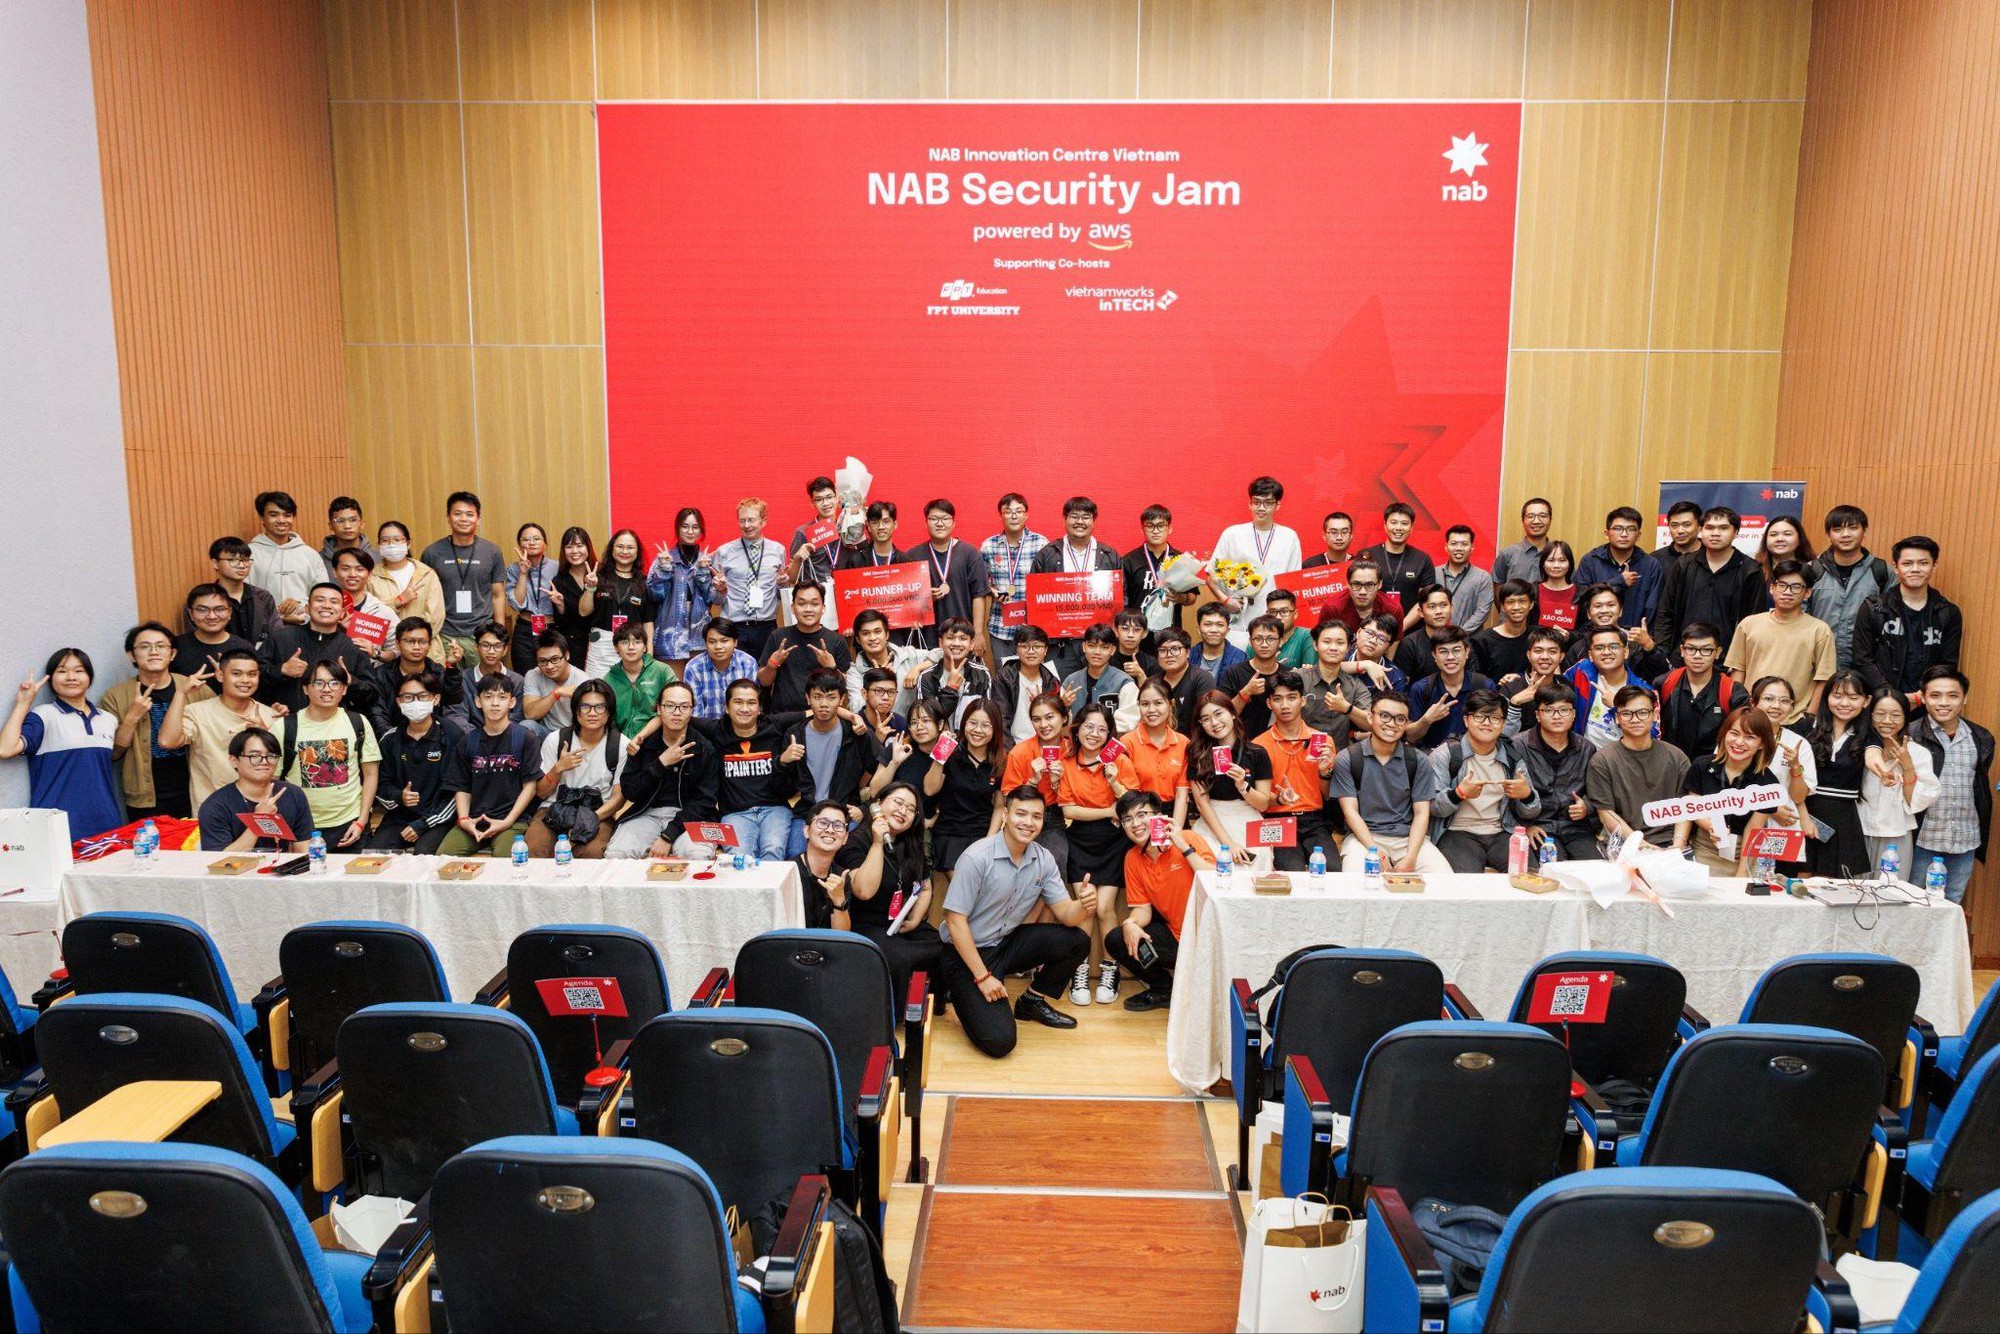 Security Jam: Sân chơi dành cho giới trẻ yêu công nghệ được tổ chức bởi NAB Innovation Centre Vietnam trên nền tảng AWS Cloud - Ảnh 1.